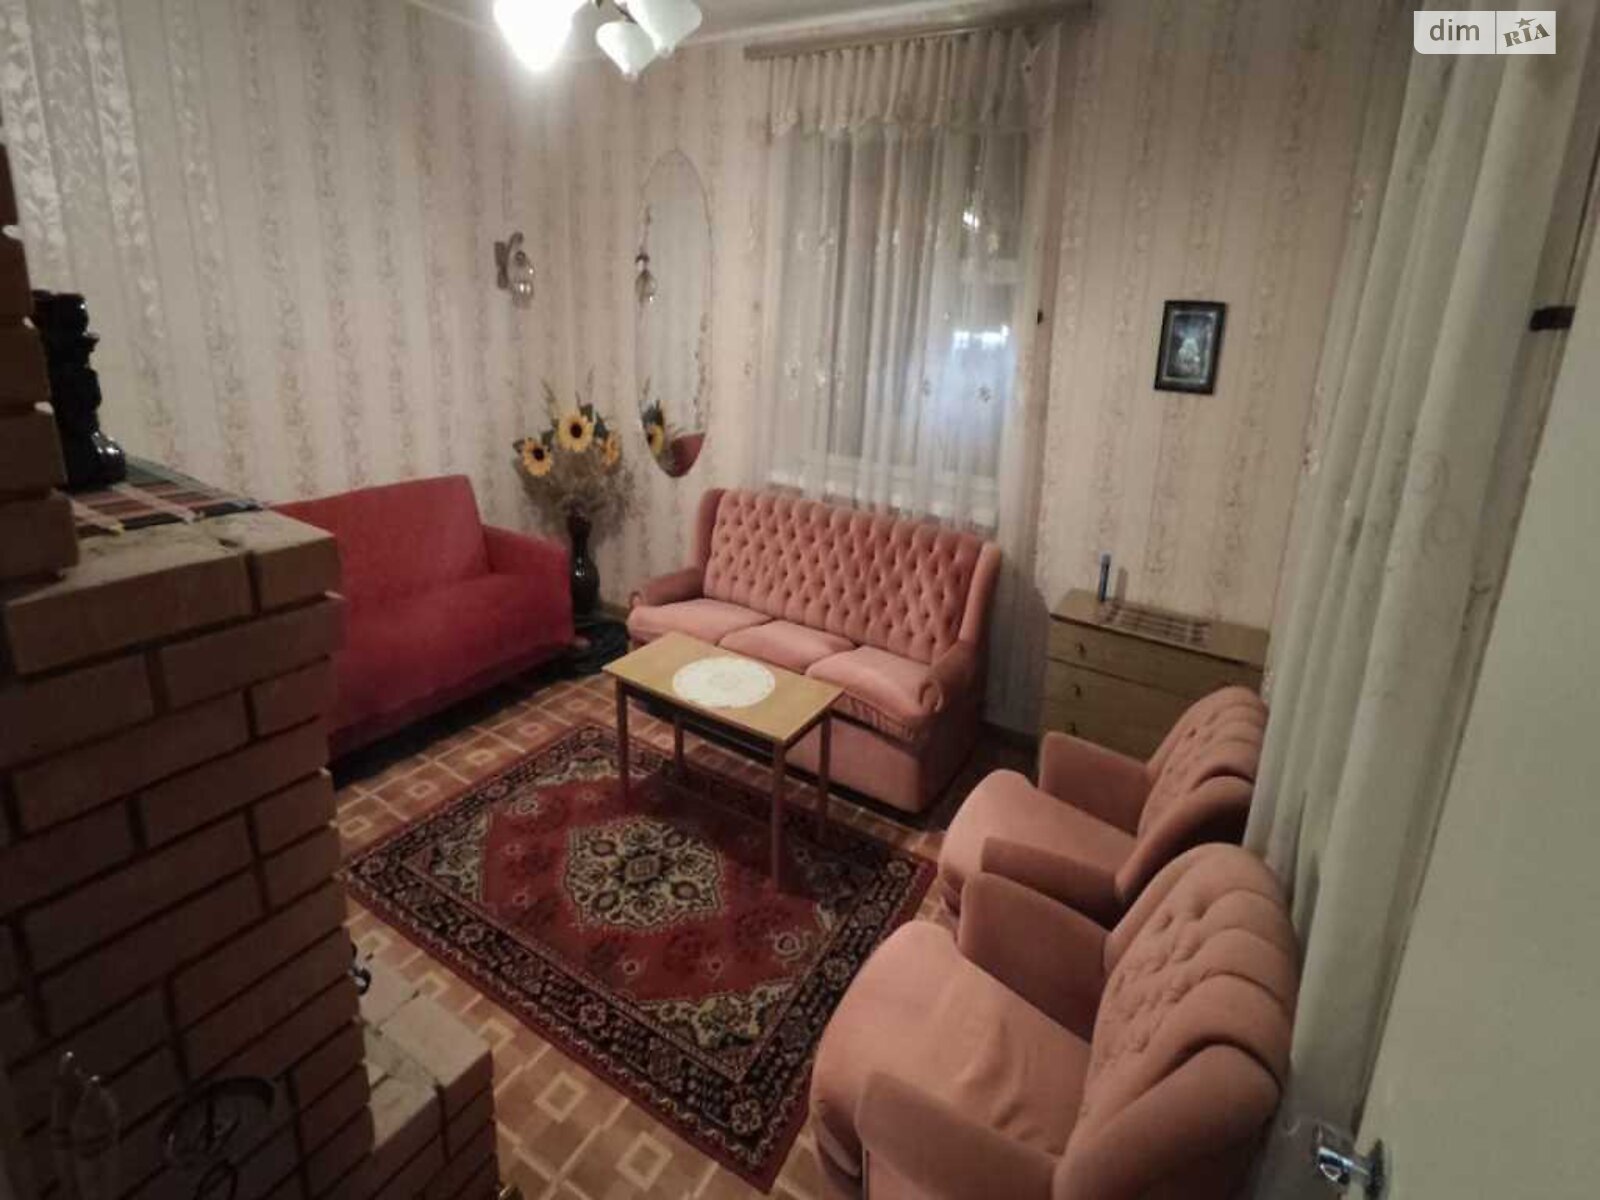 Продажа части дома в Полтаве, улица Айвовый, район Воронина, 3 комнаты фото 1